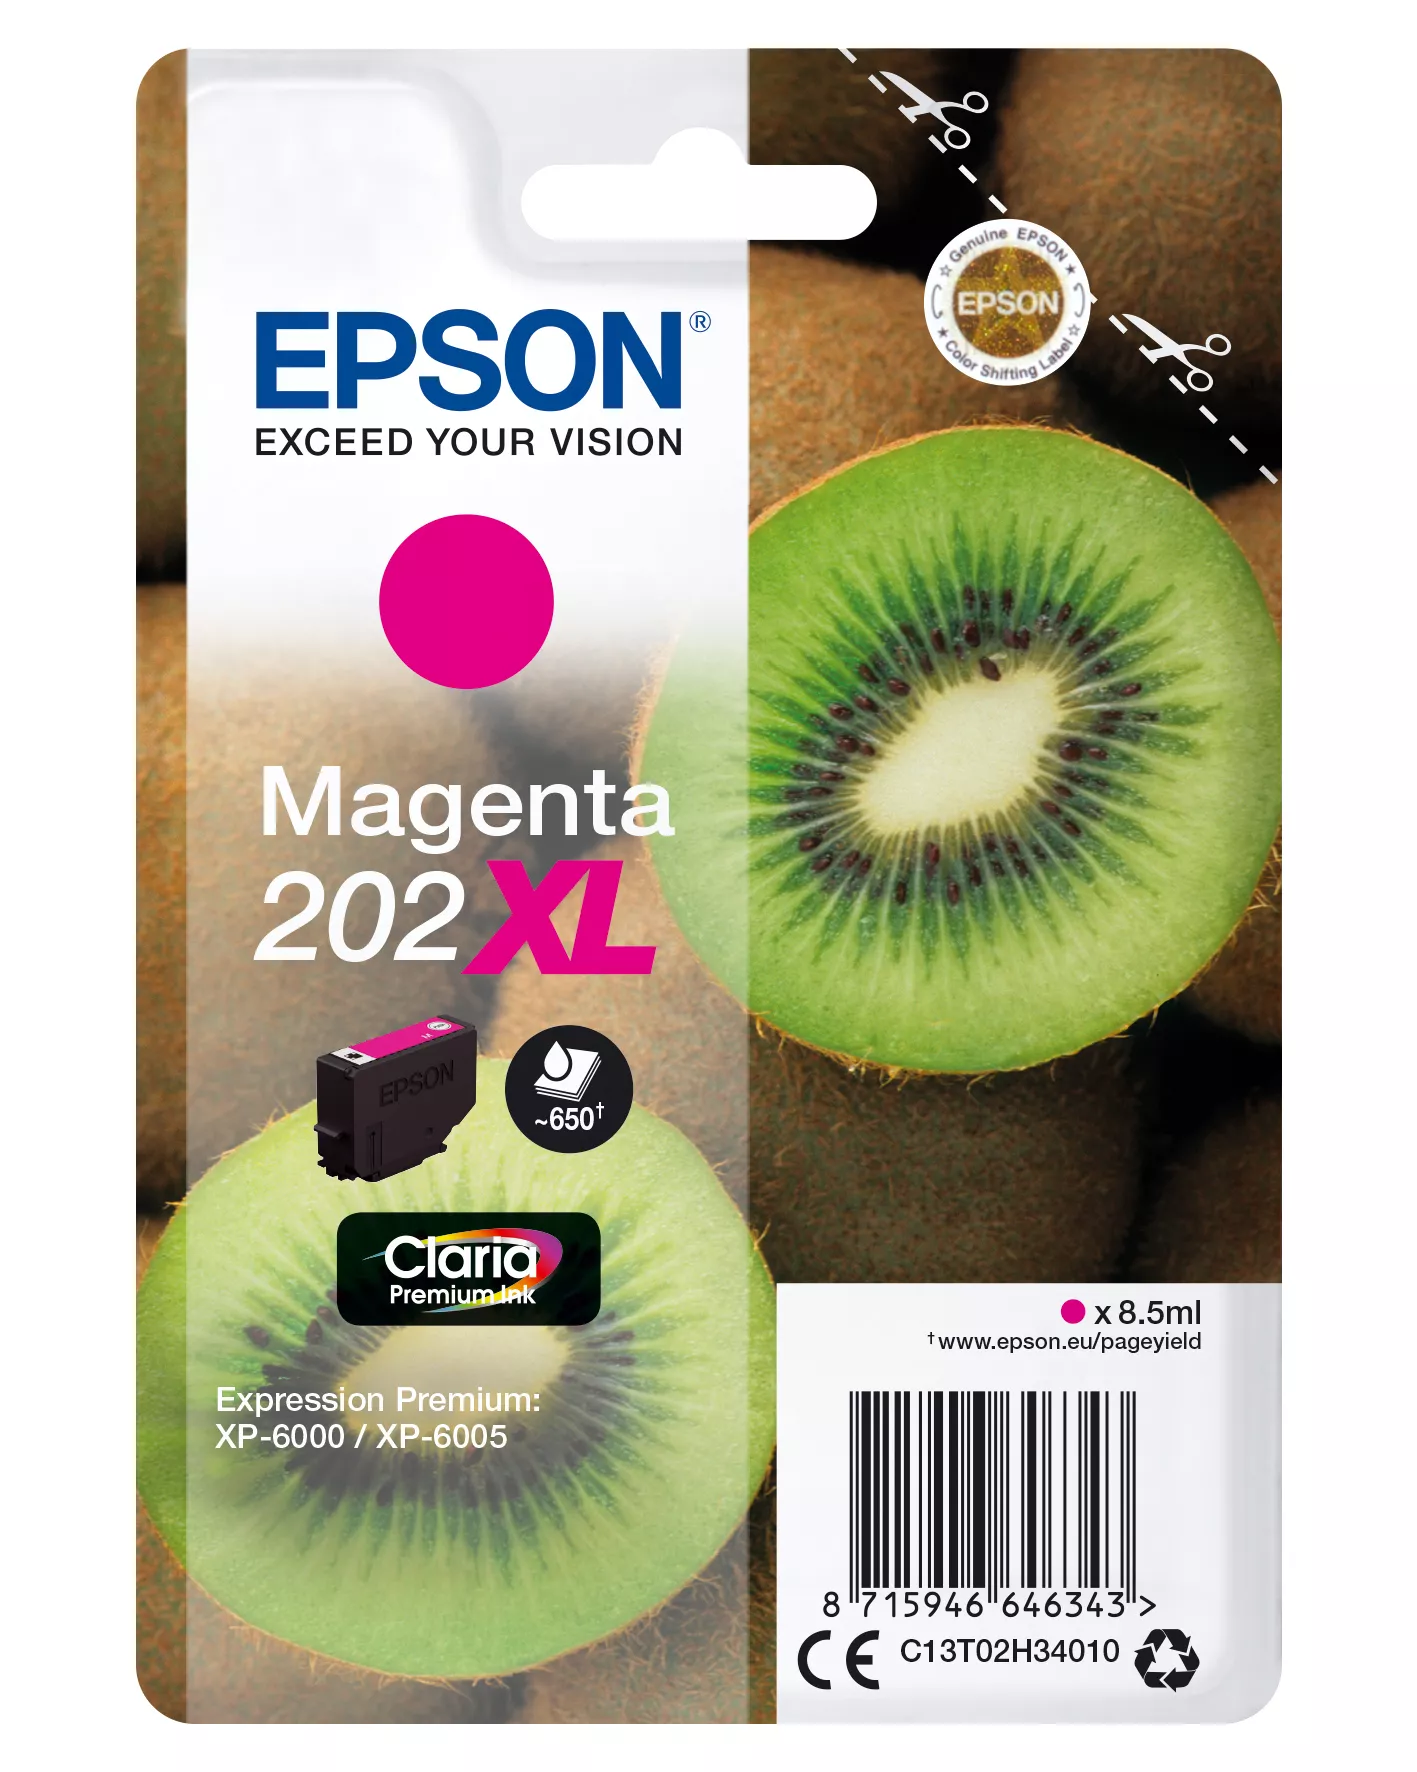 Achat EPSON Encre Claria Premium - Cartouche Kiwi 202 Magenta - 8715946646343